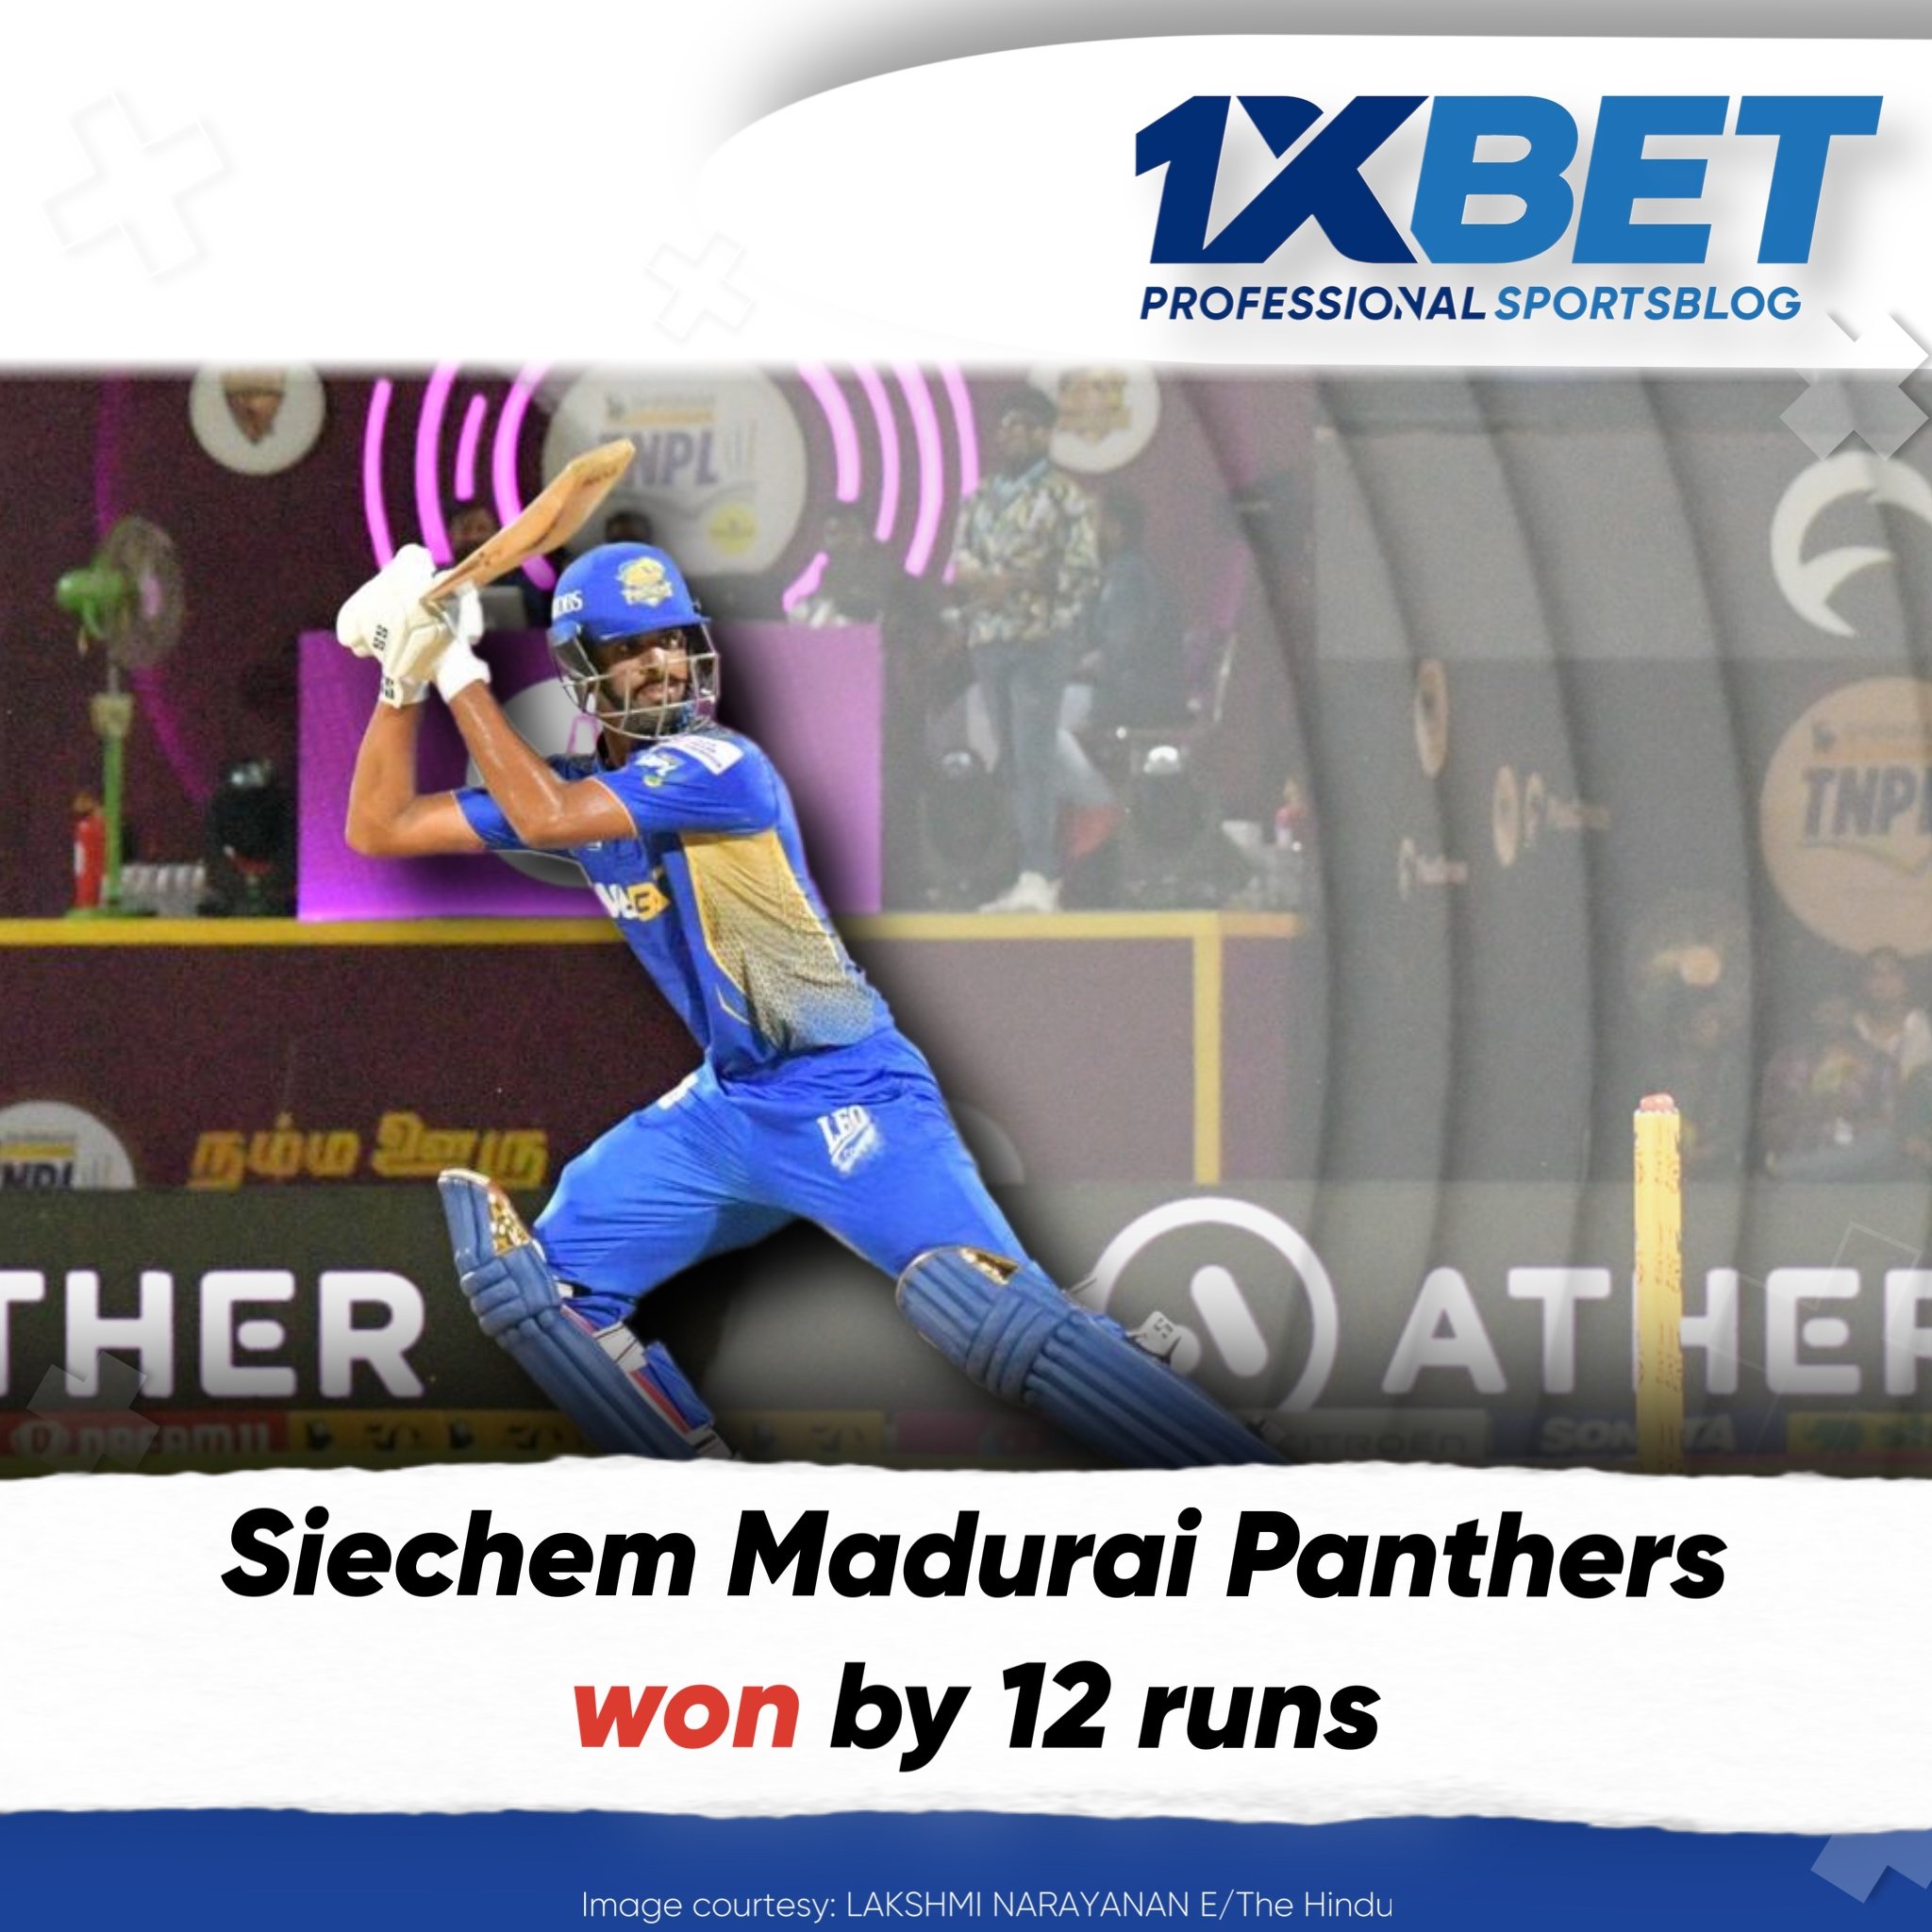 Siechem Madurai Panthers won by 12 runs